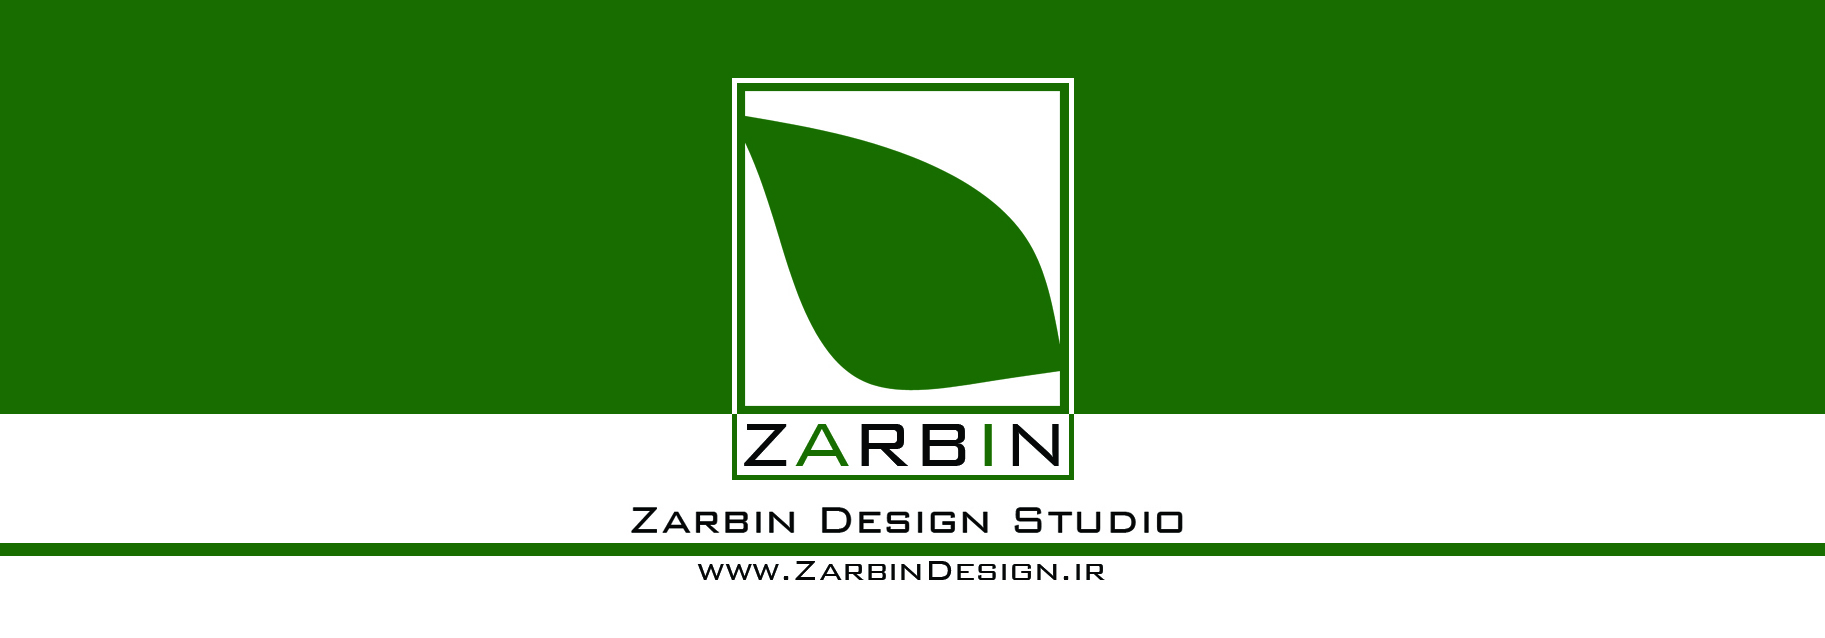 آتلیه معماری و معماری منظر زربین zarbin design studio